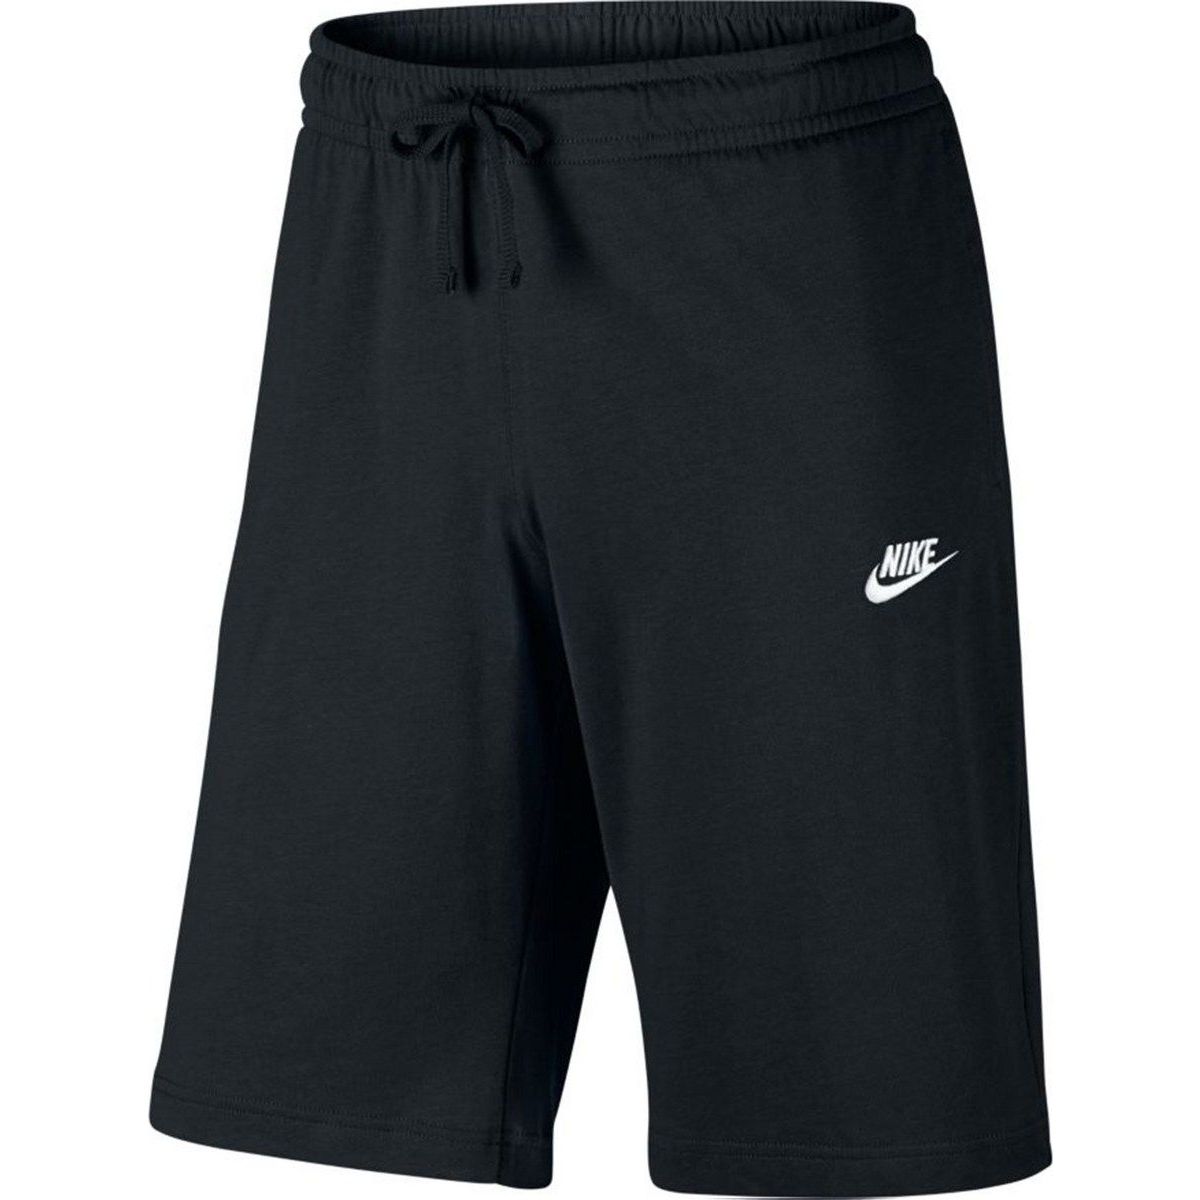 Nike Sportswear Men's Shorts 804419-010